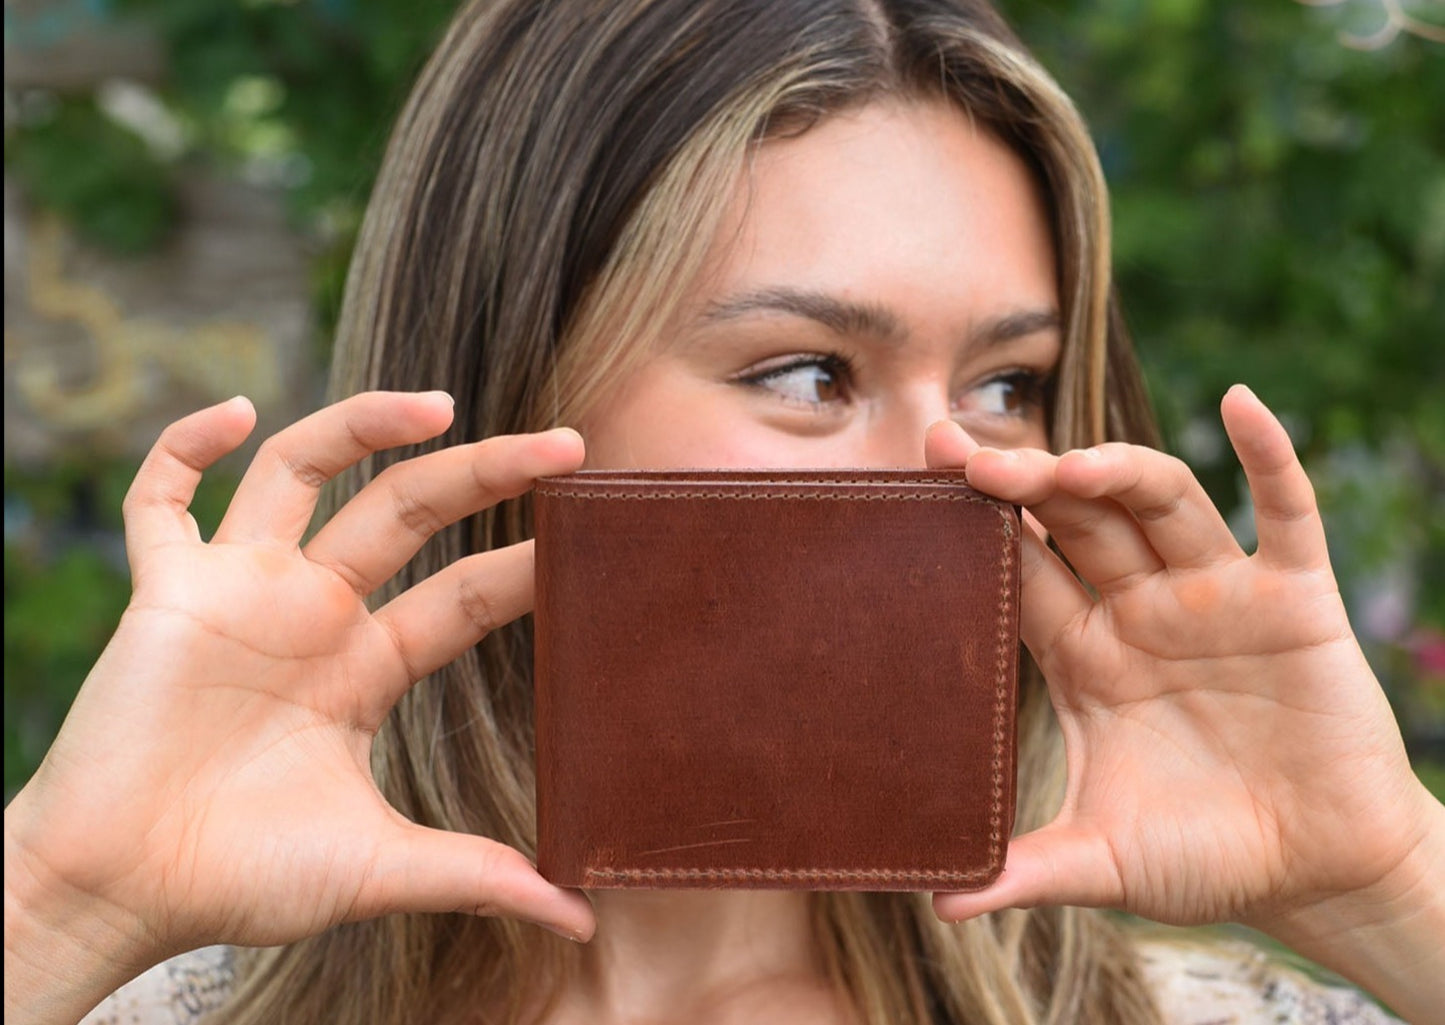 Bi-fold Wallet